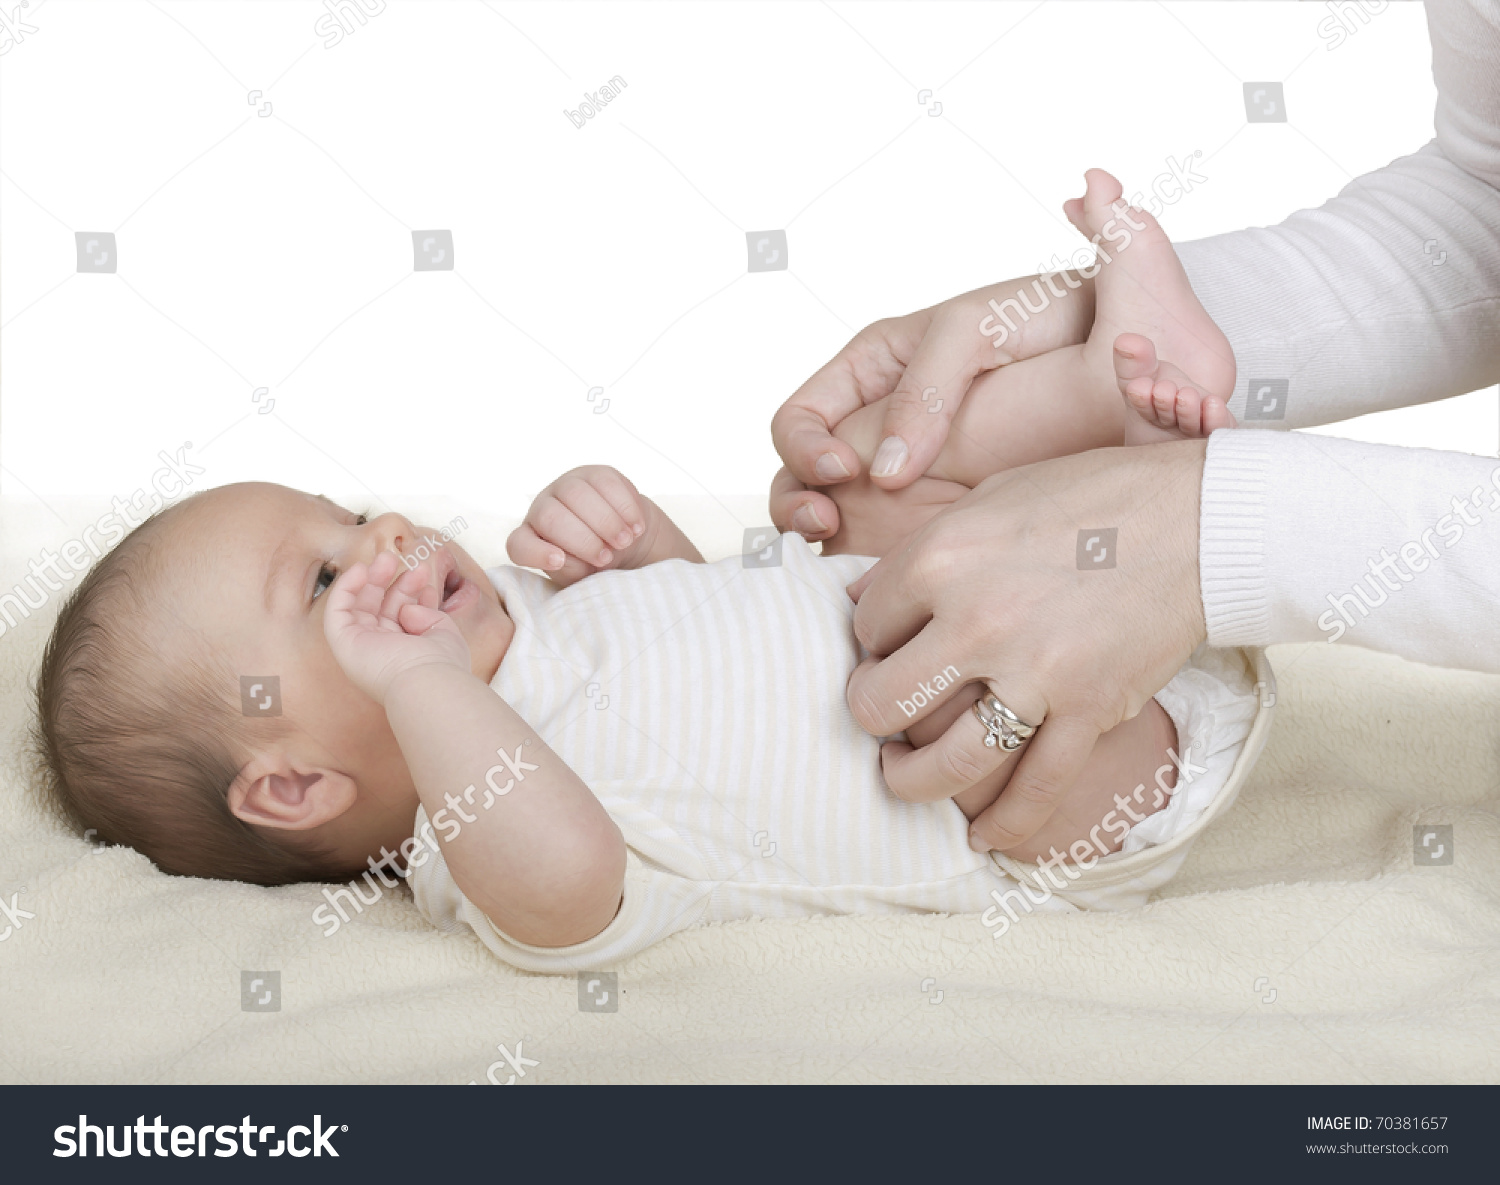 У новорожденного ребенка газики